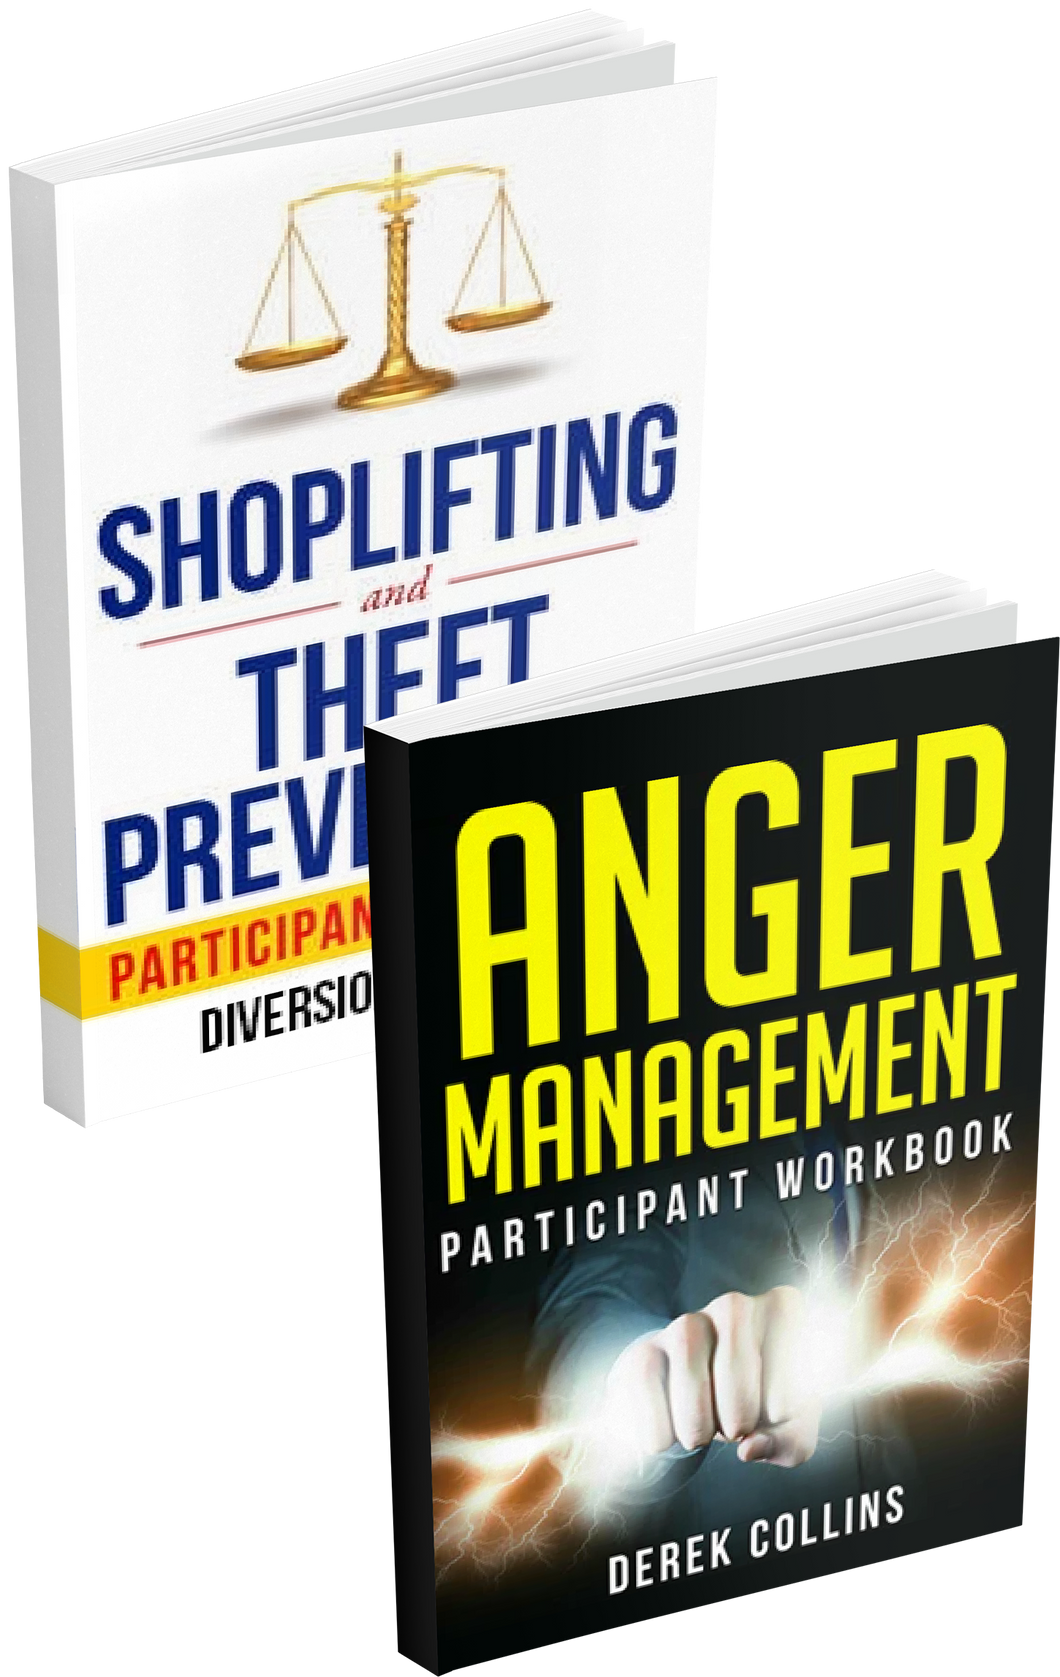 Shoplifting + Anger Management Workbook Bundle